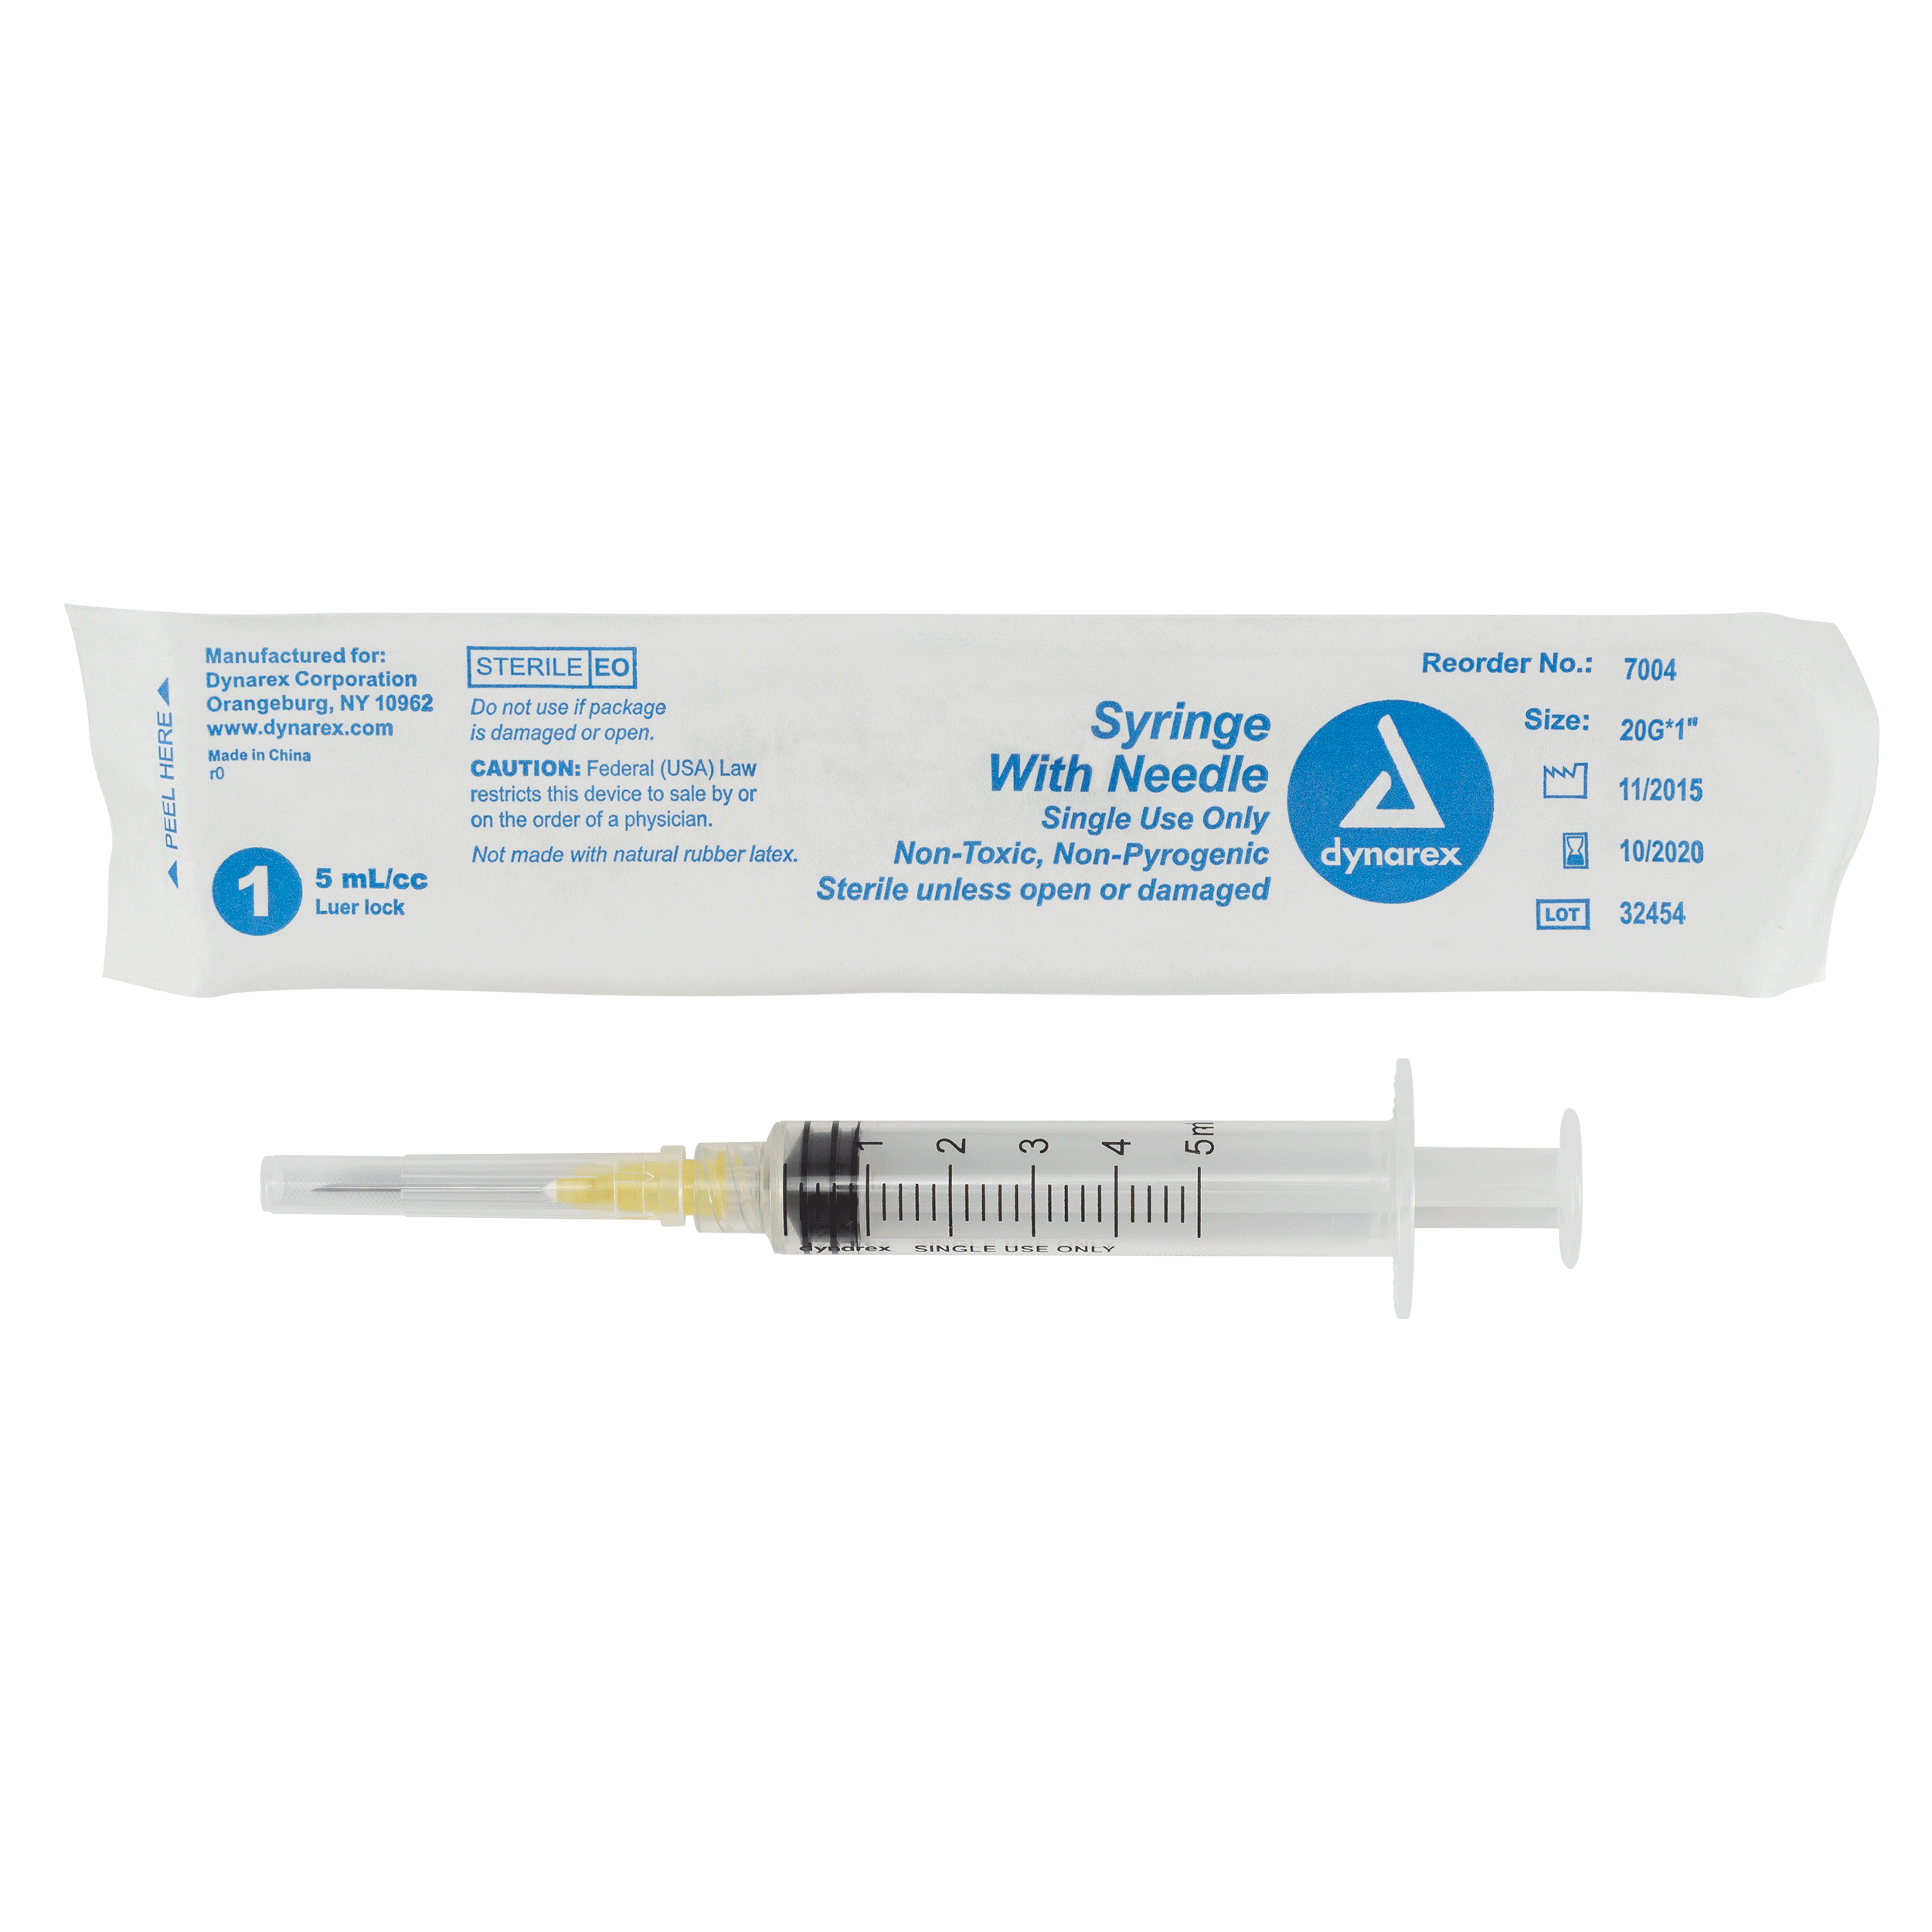 Syringes With Needle - 5cc - 20G, 1